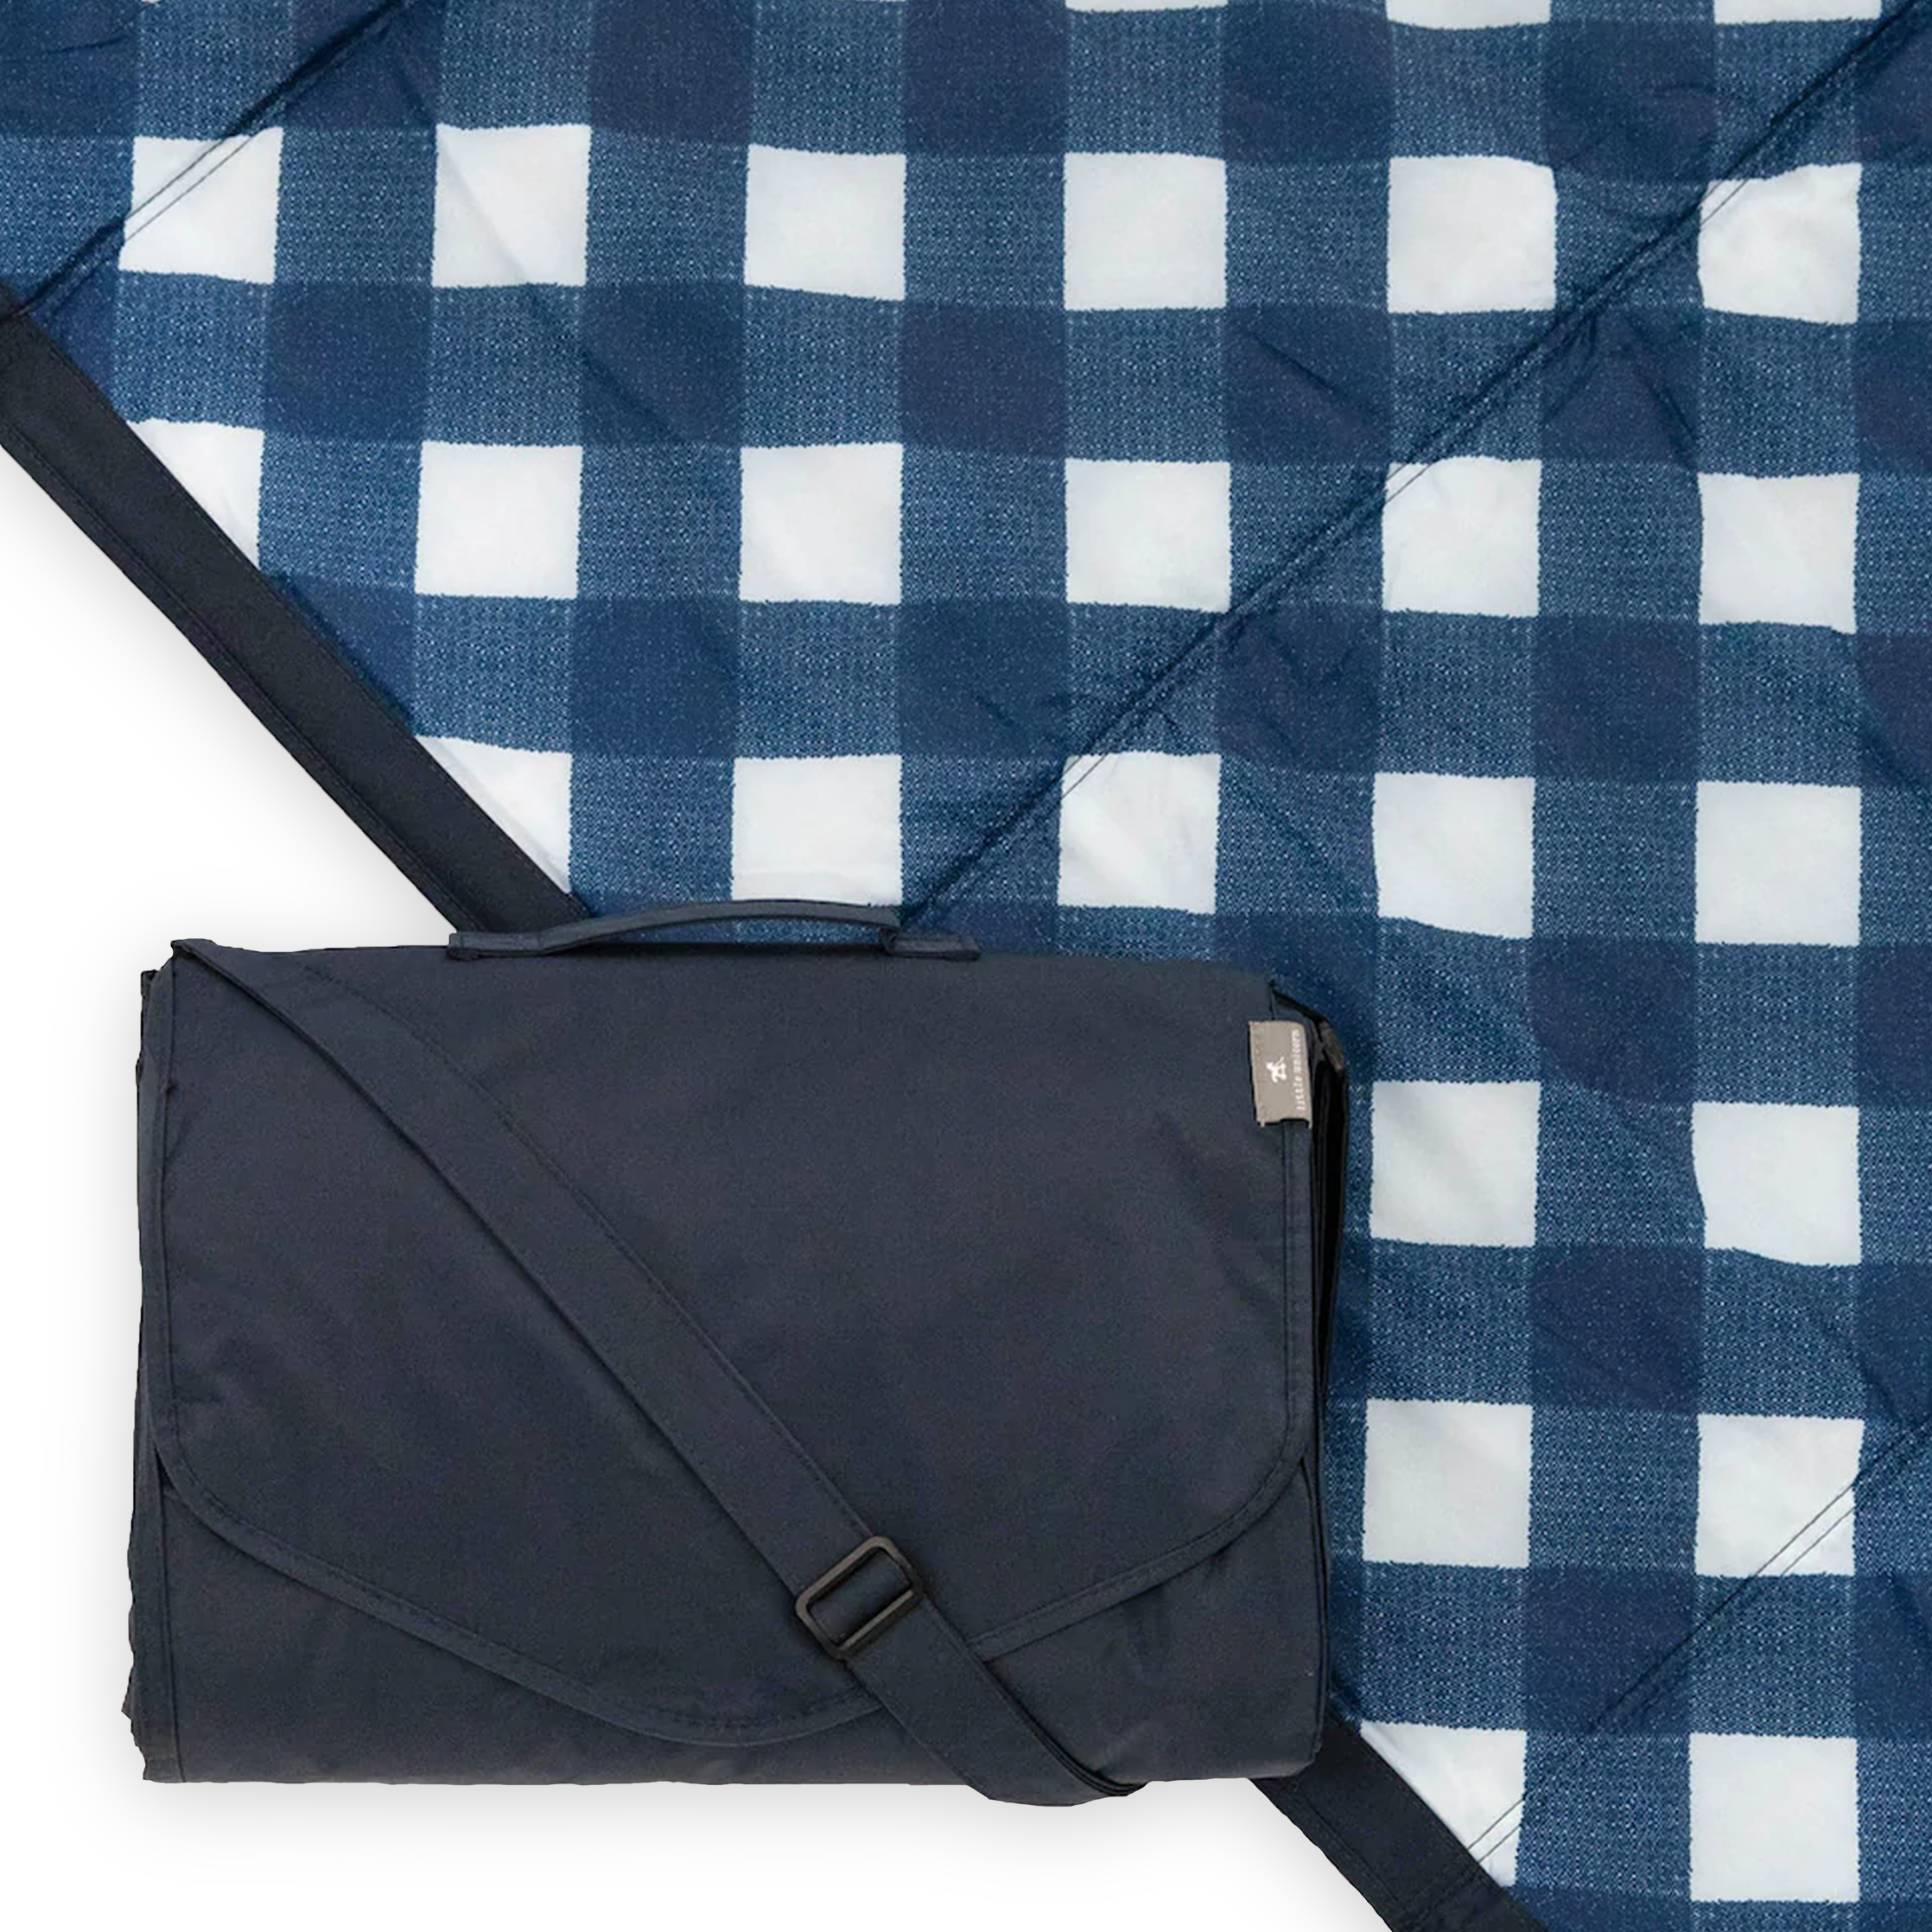 All Over Plaid Pattern Shoulder Bag, Versatile Storage Bag